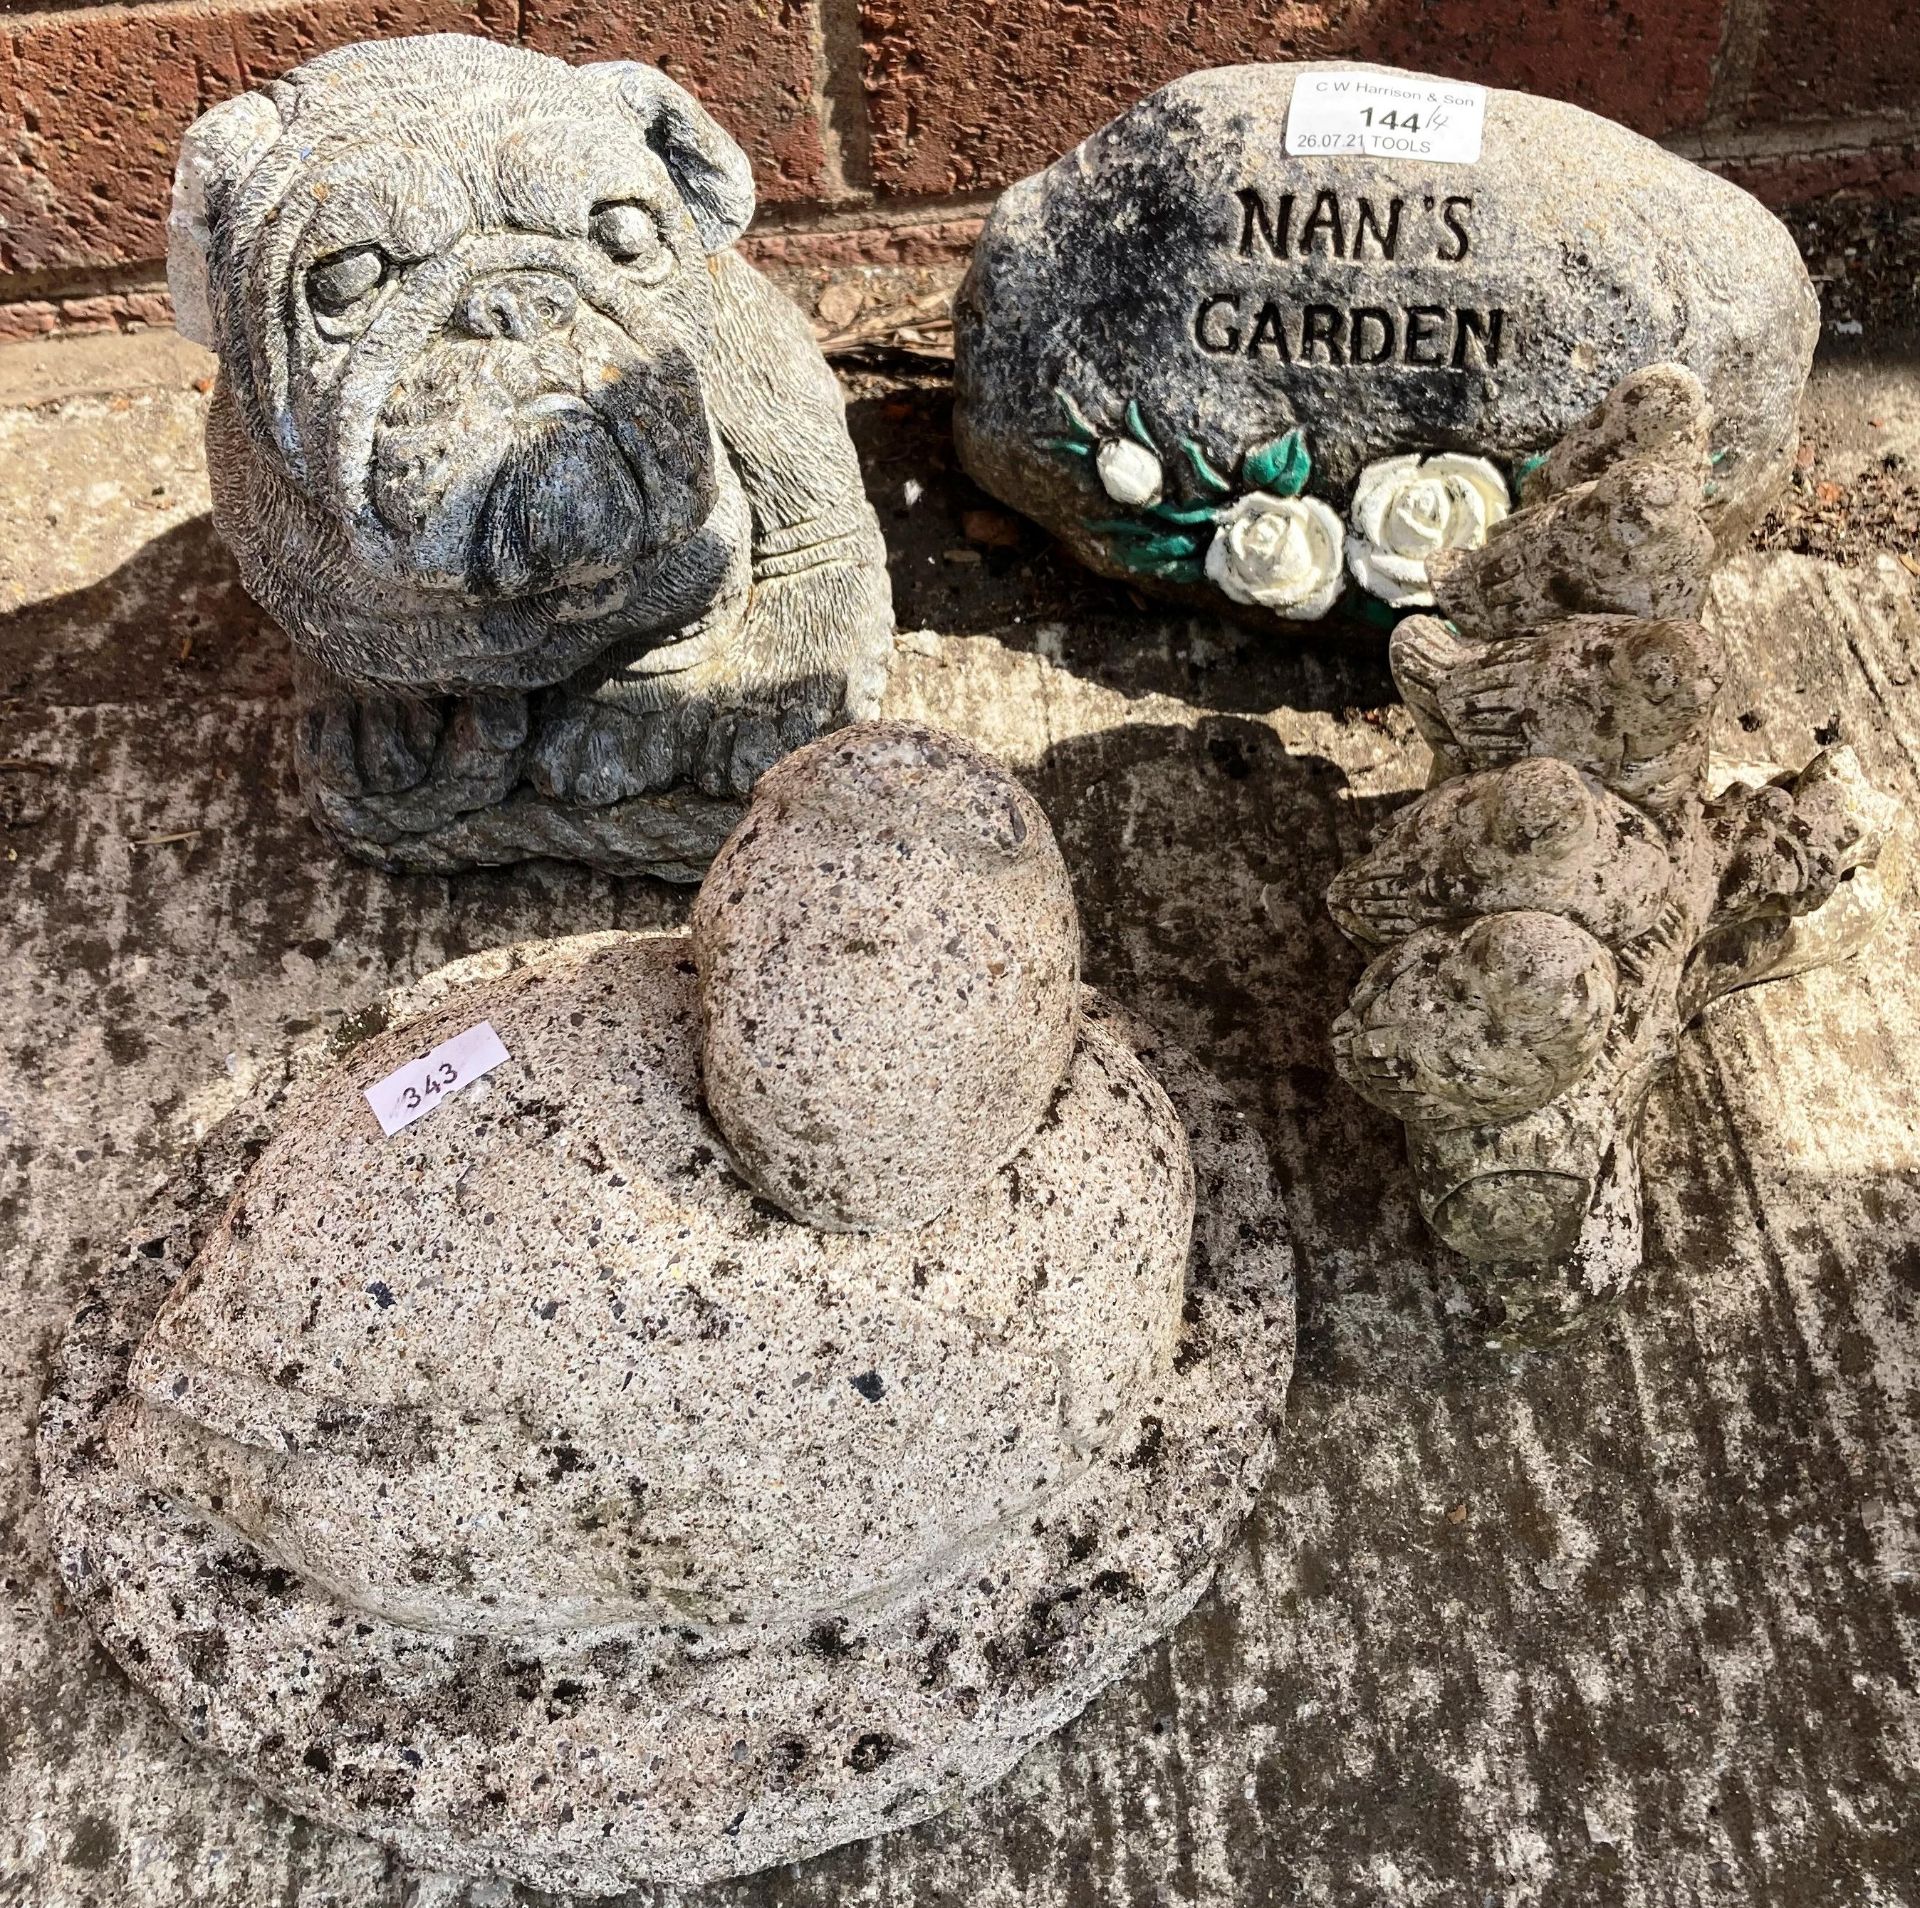 Four small concrete garden ornaments - dog, nan's garden,